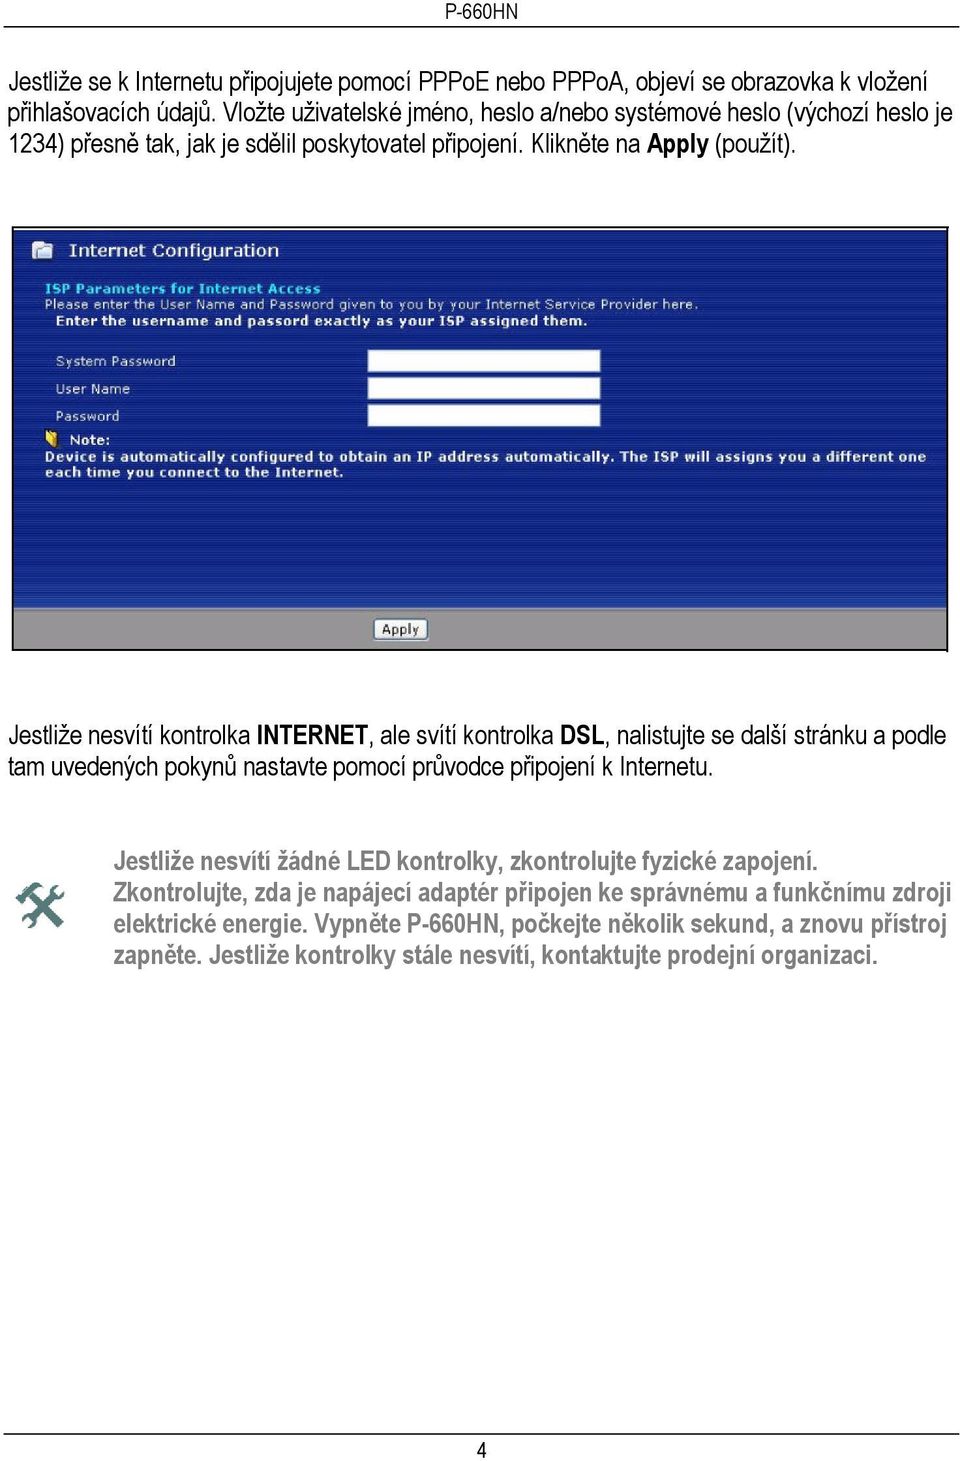 Jestliže nesvítí kontrolka INTERNET, ale svítí kontrolka DSL, nalistujte se další stránku a podle tam uvedených pokynů nastavte pomocí průvodce připojení k Internetu.